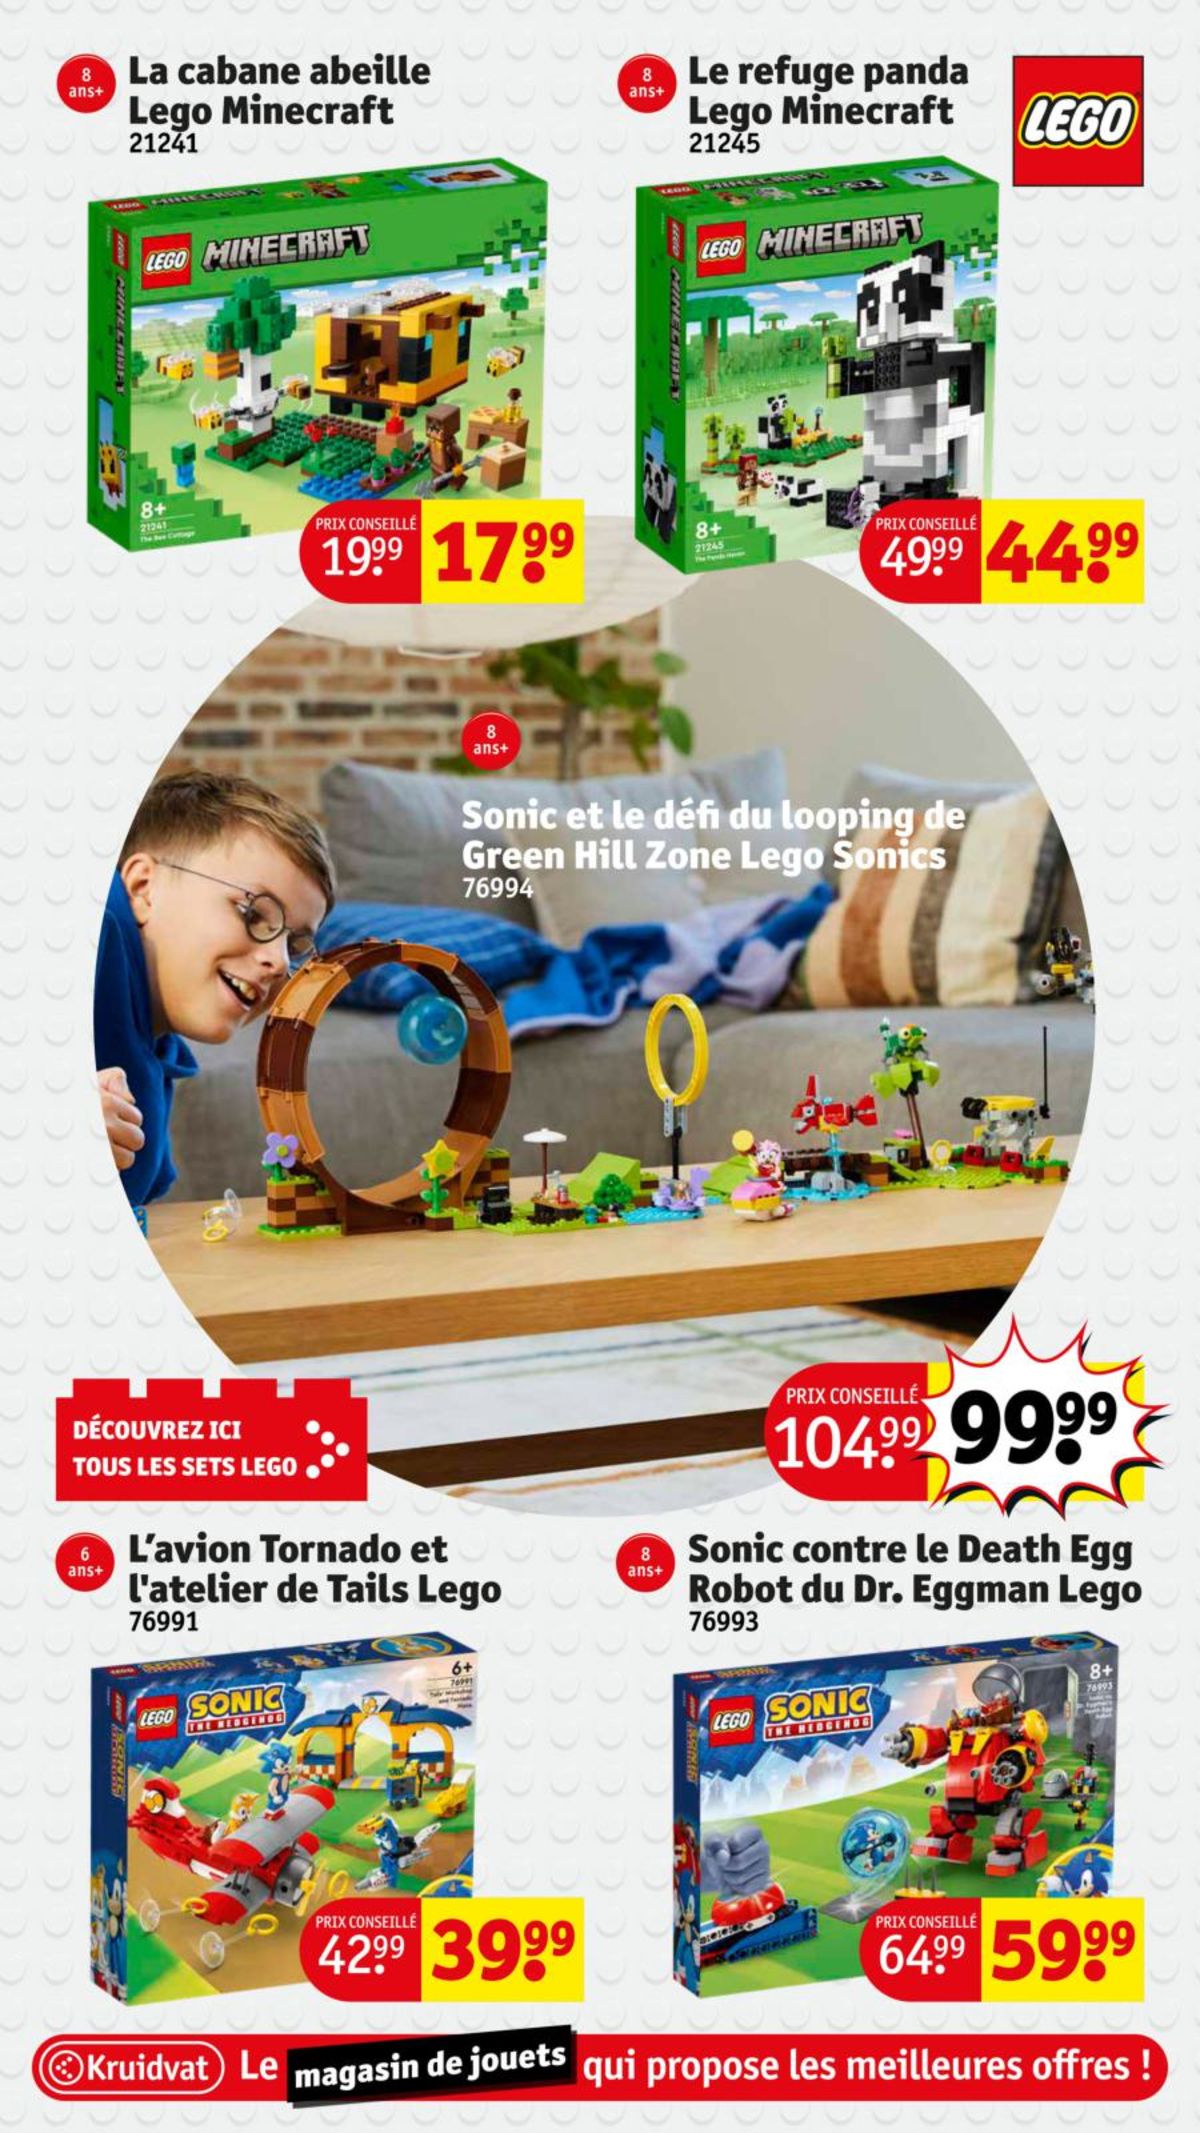 Catalogue Le magasin de jouets aux meilleures offres !, page 00007